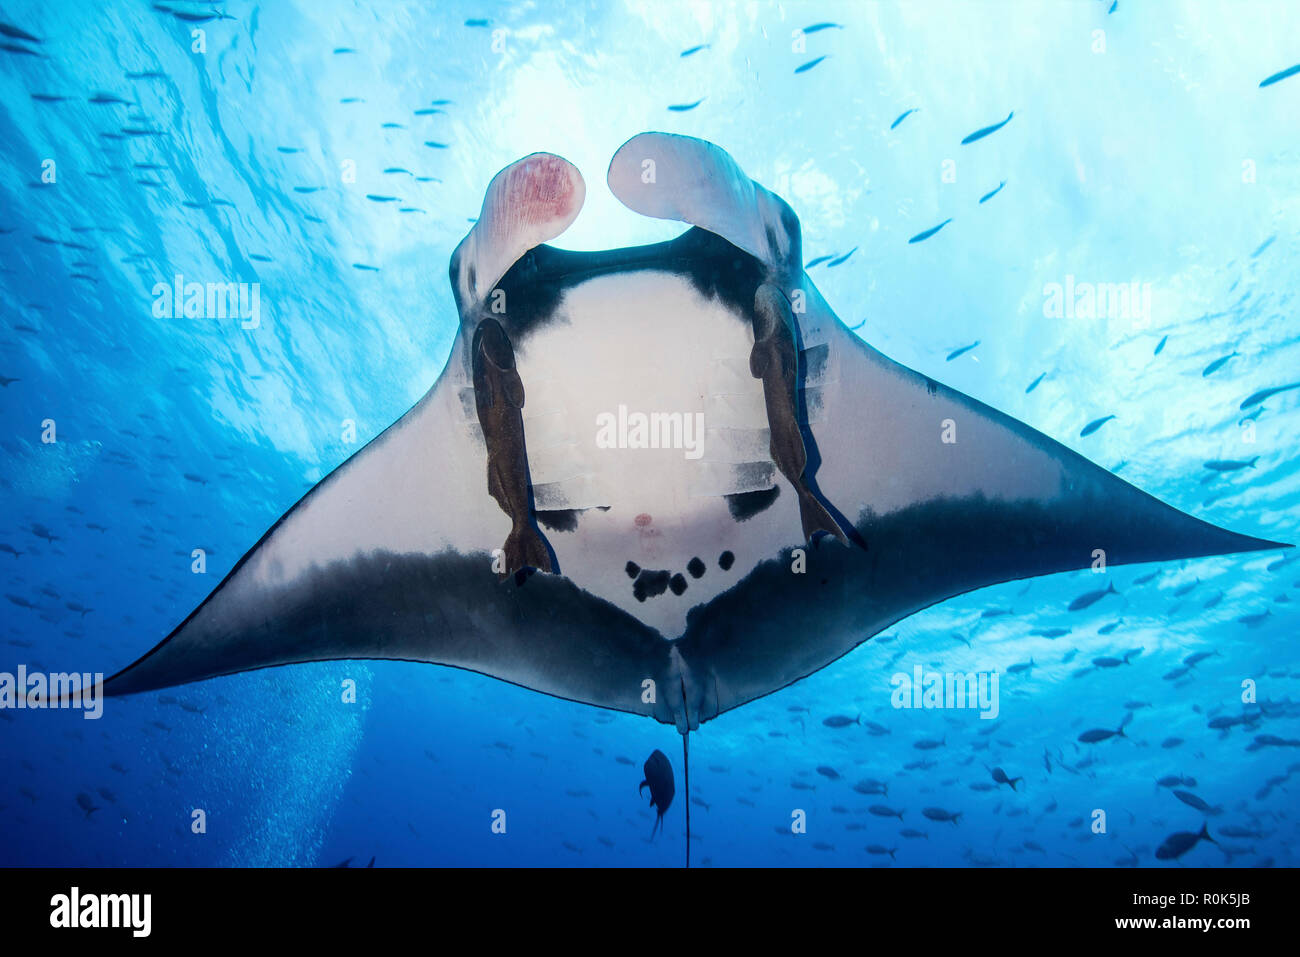 A giant pacific manta ray, Socorro Island, Mexico. Stock Photo